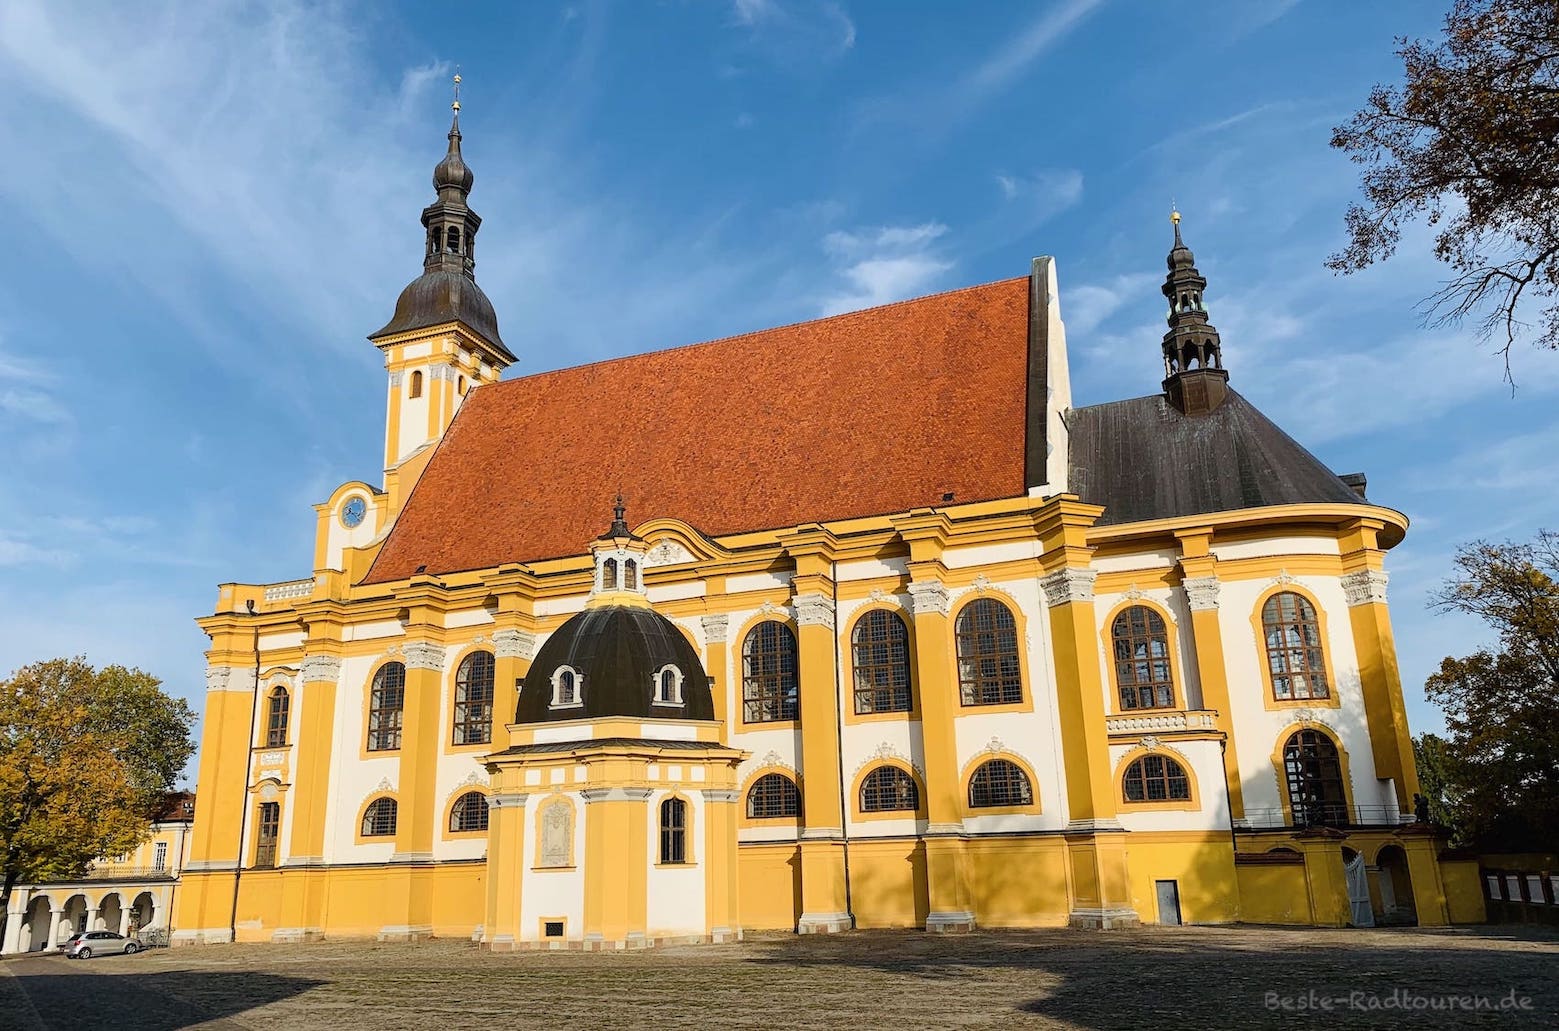 Barocke Klosterkirche St. Mariä Himmelfahrt von Kloster Neuzelle, Foto von der Seite / seitliche Ansicht